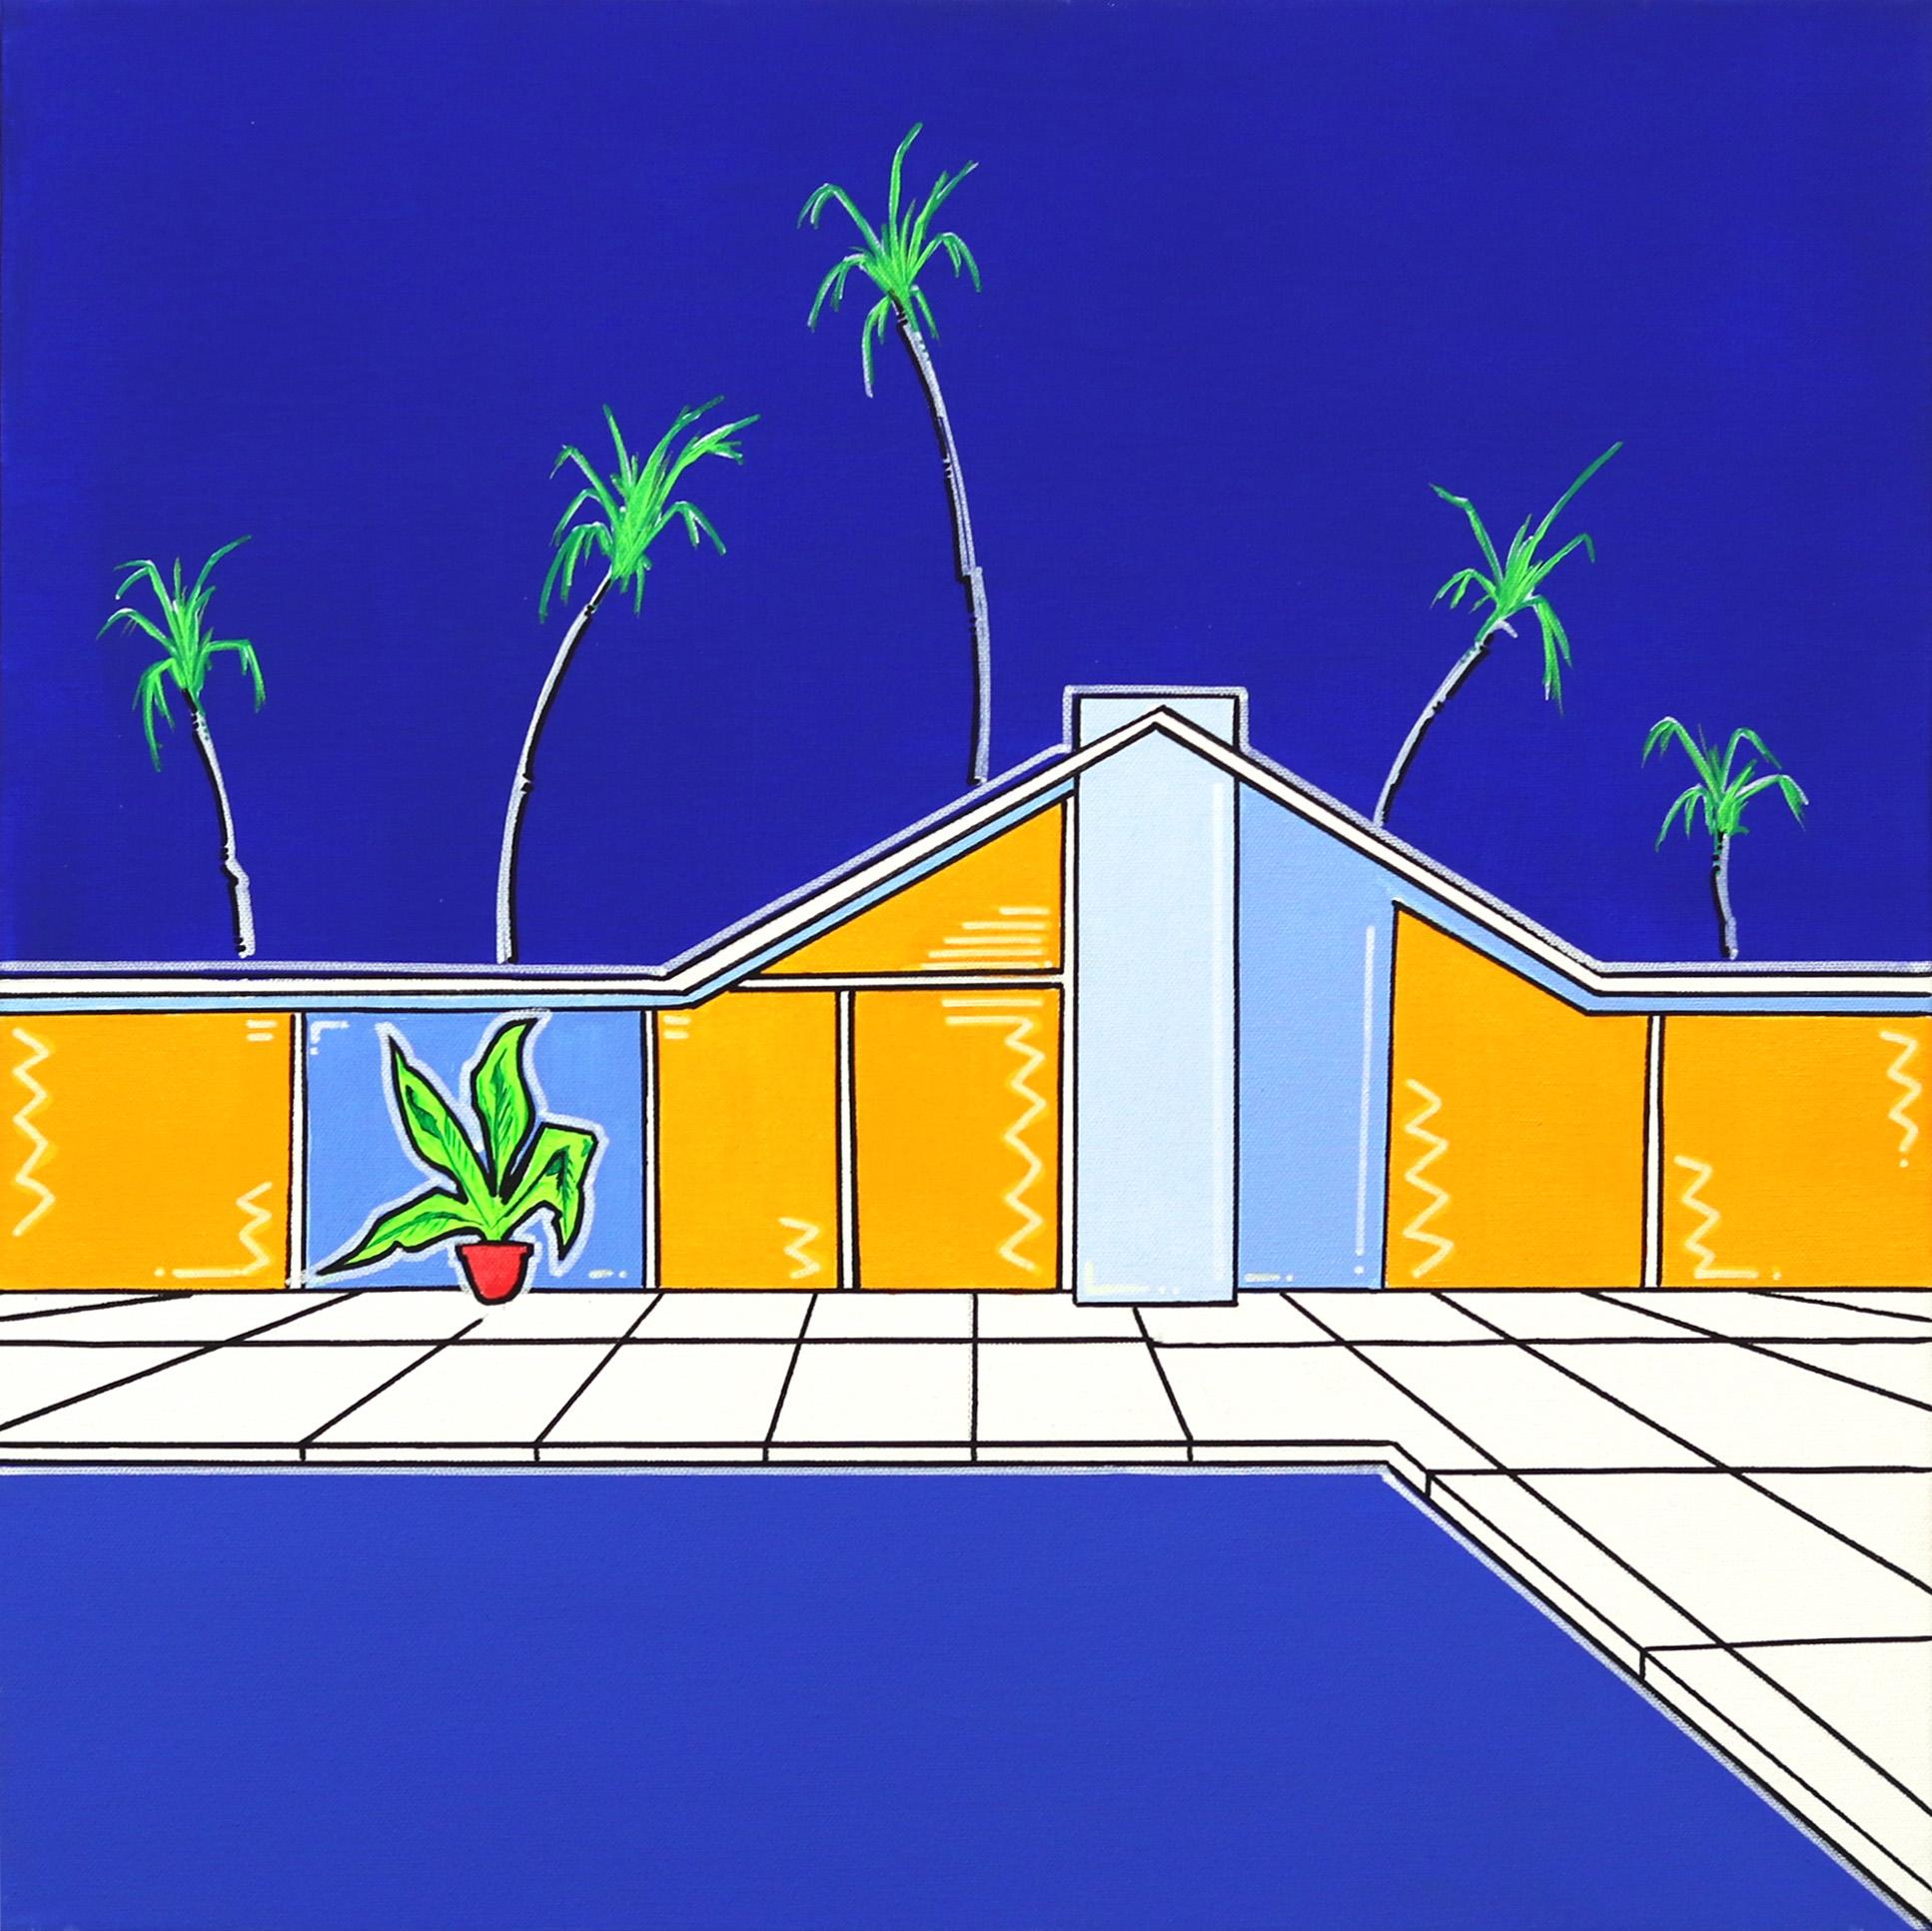 Interior Painting Jonjo Elliott - Peinture originale d'été 2 - Bleu et jaune vifs représentant une maison et un piscine